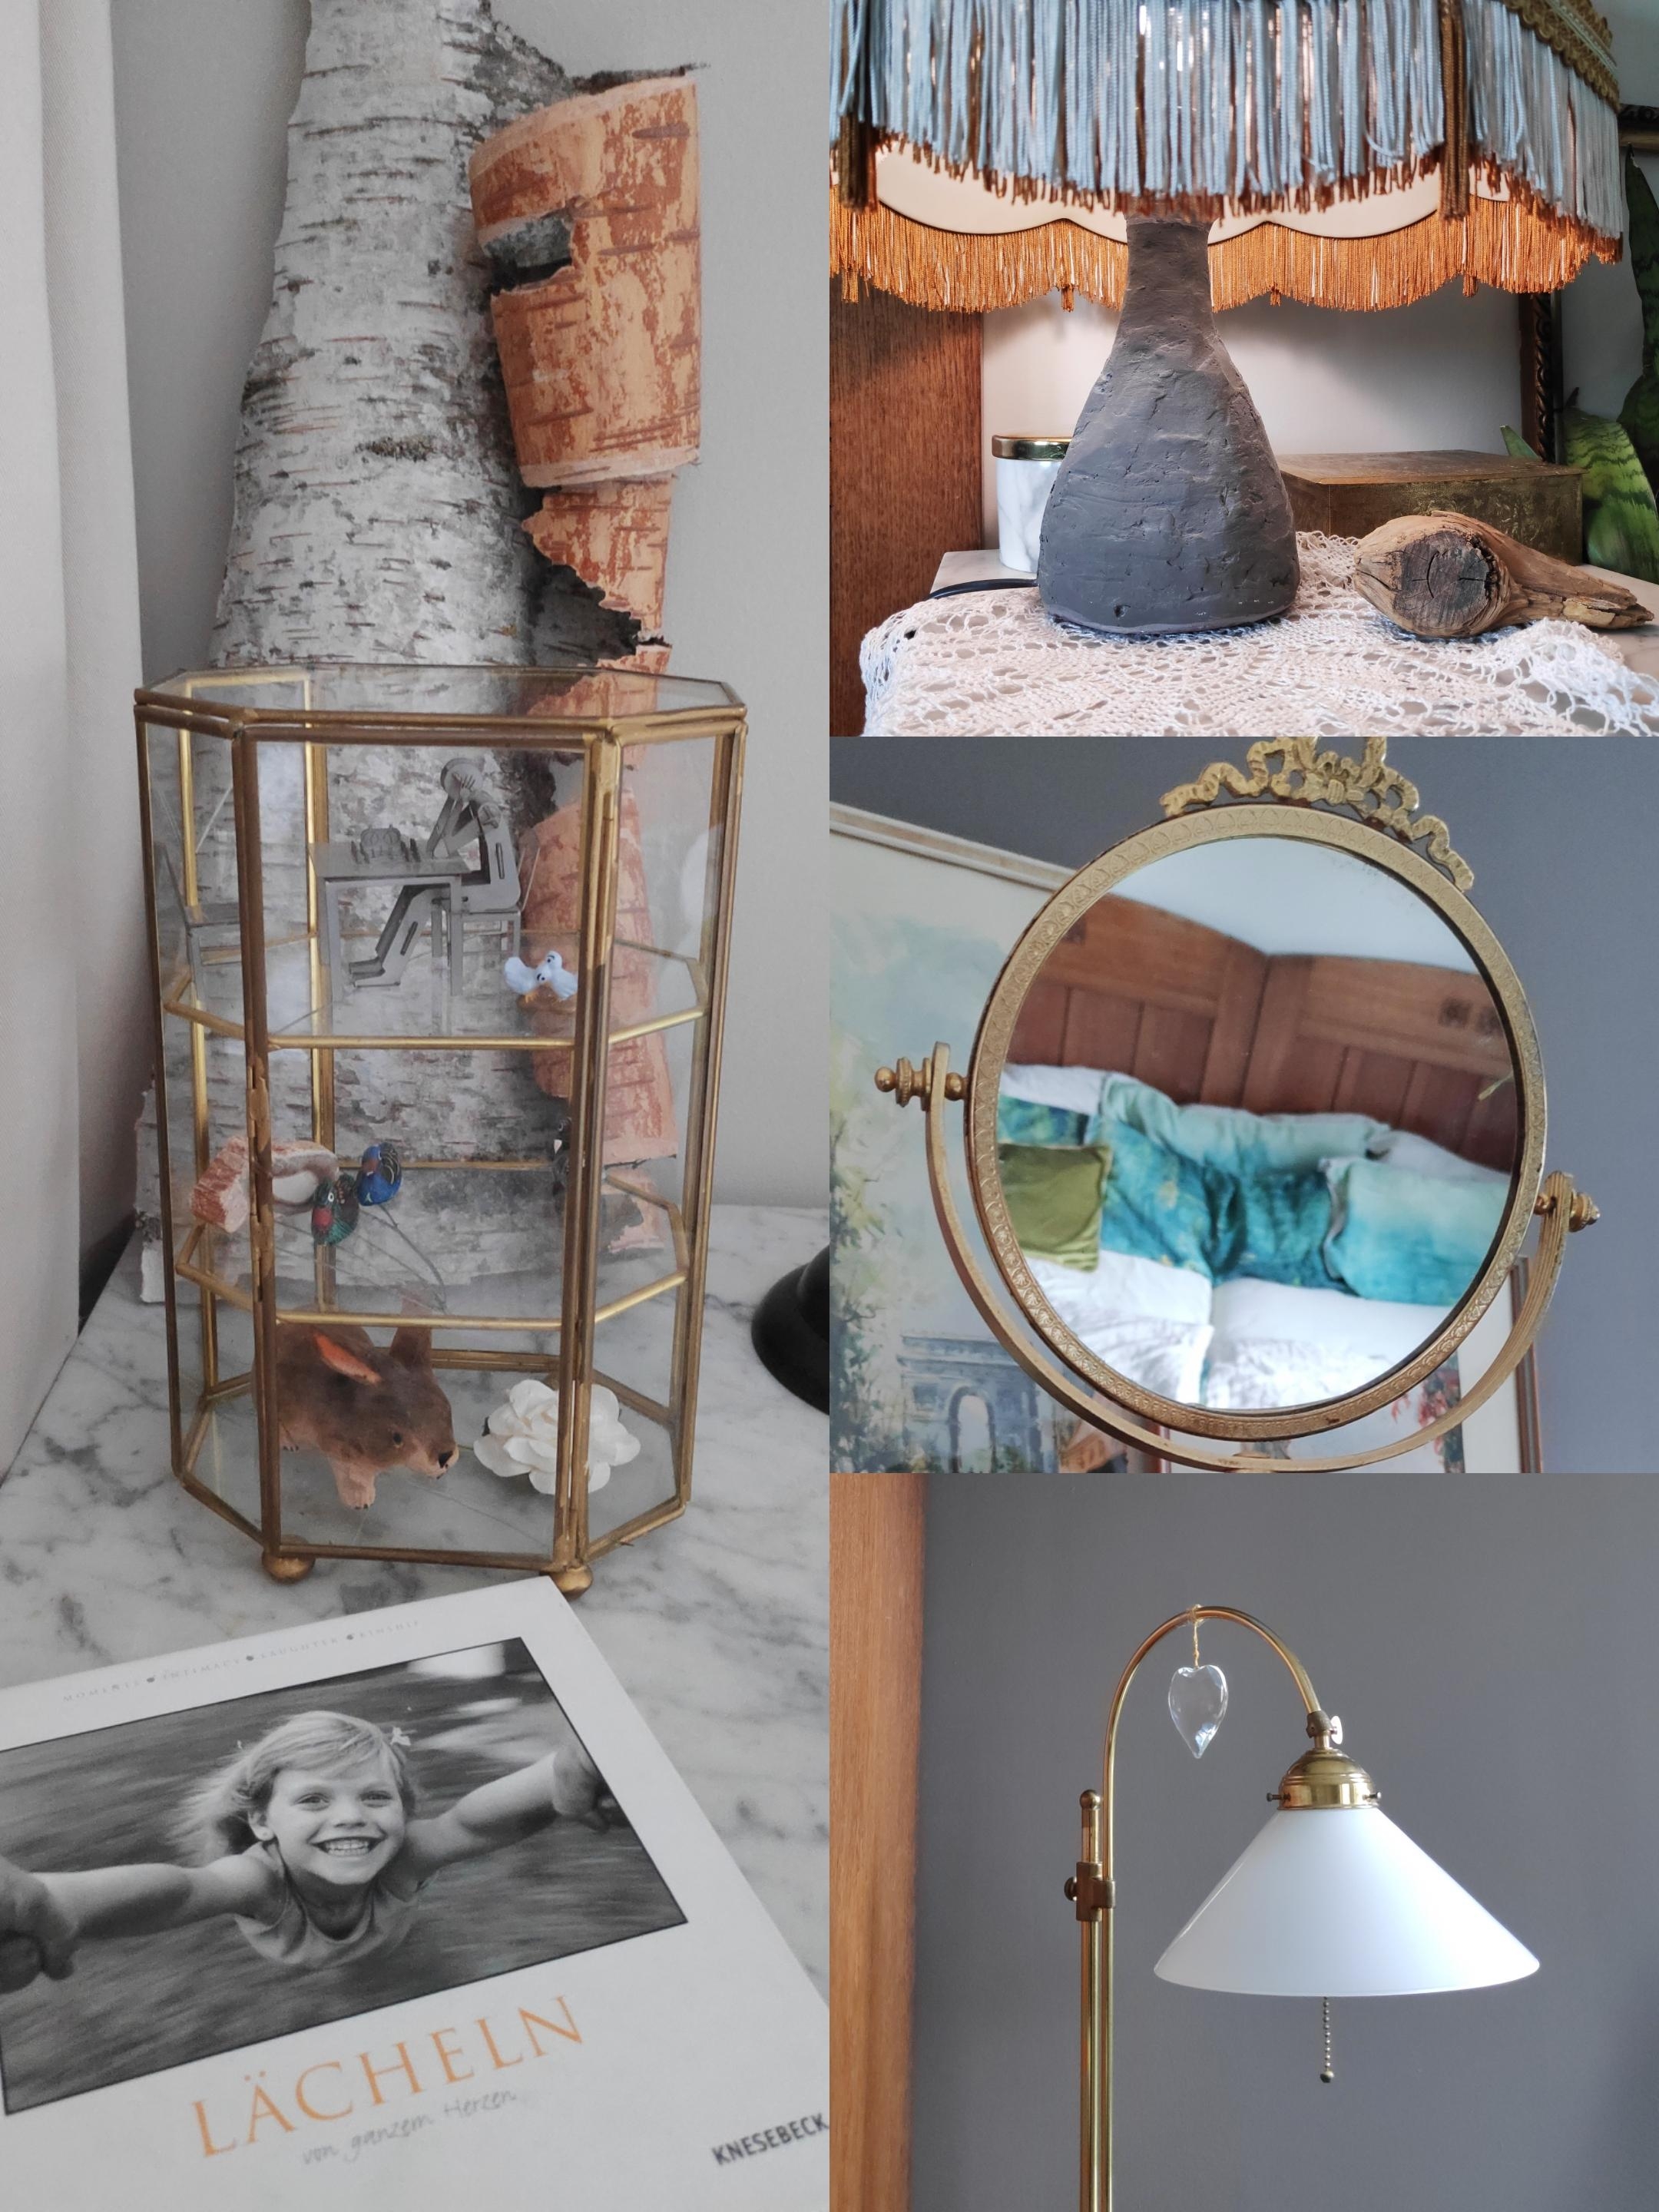 .Details. Die graue Lampe - noch mit 15 gemacht.
#details #diy #schlafzimmer #bedroominspo #vintage